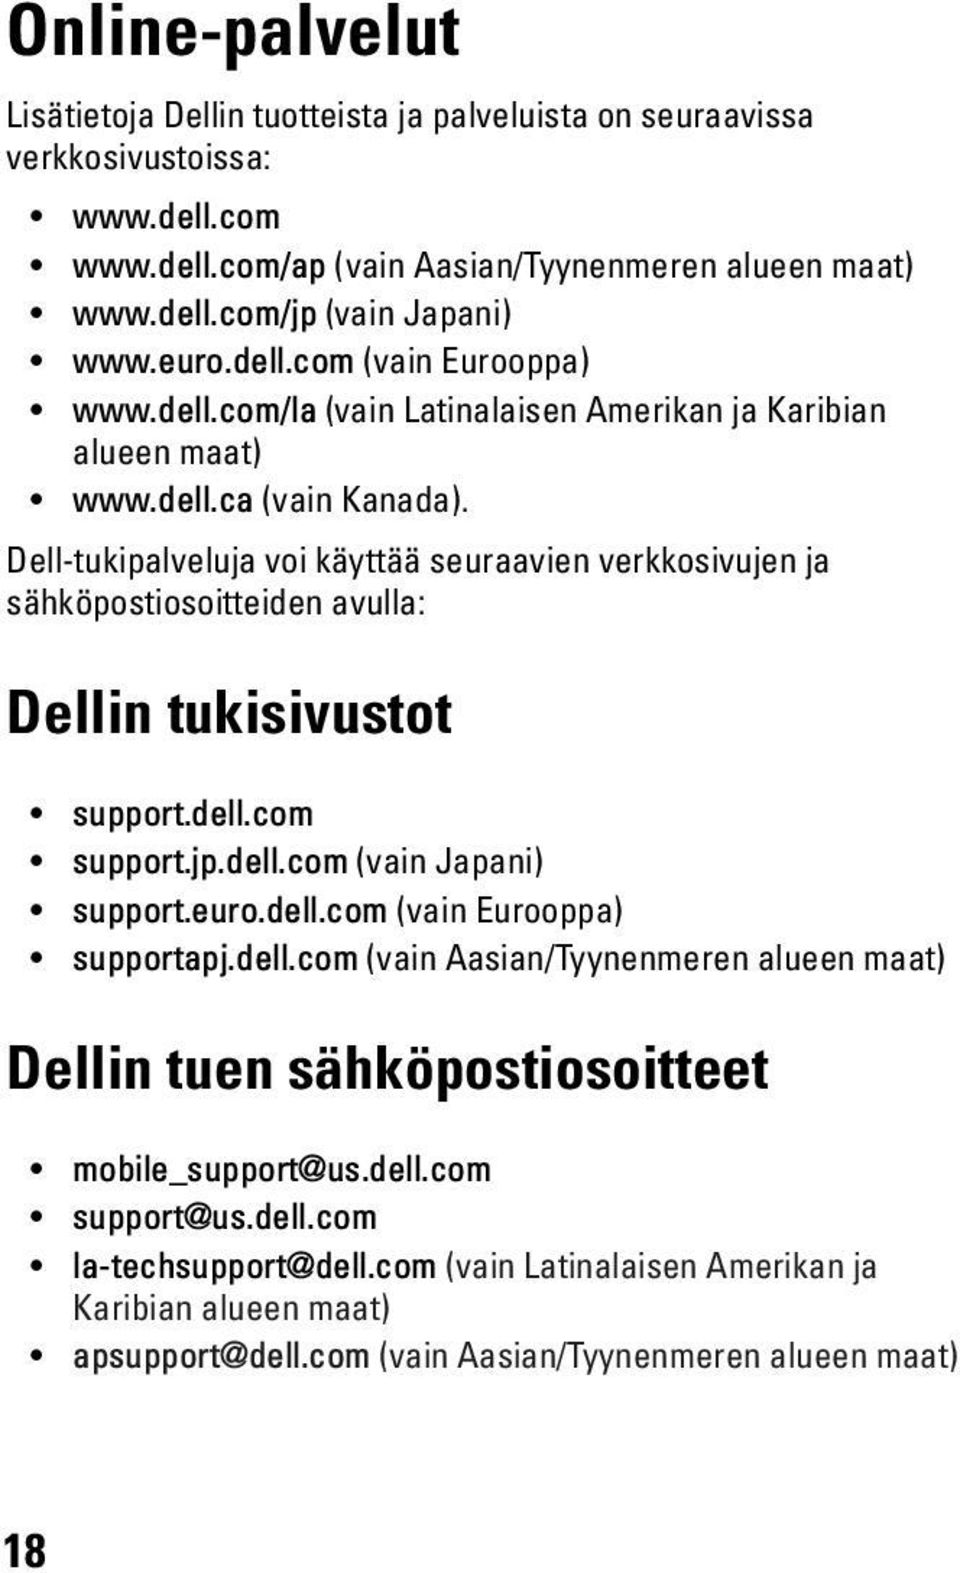 Dell-tukipalveluja voi käyttää seuraavien verkkosivujen ja sähköpostiosoitteiden avulla: Dellin tukisivustot support.dell.com support.jp.dell.com (vain Japani) support.euro.dell.com (vain Eurooppa) supportapj.